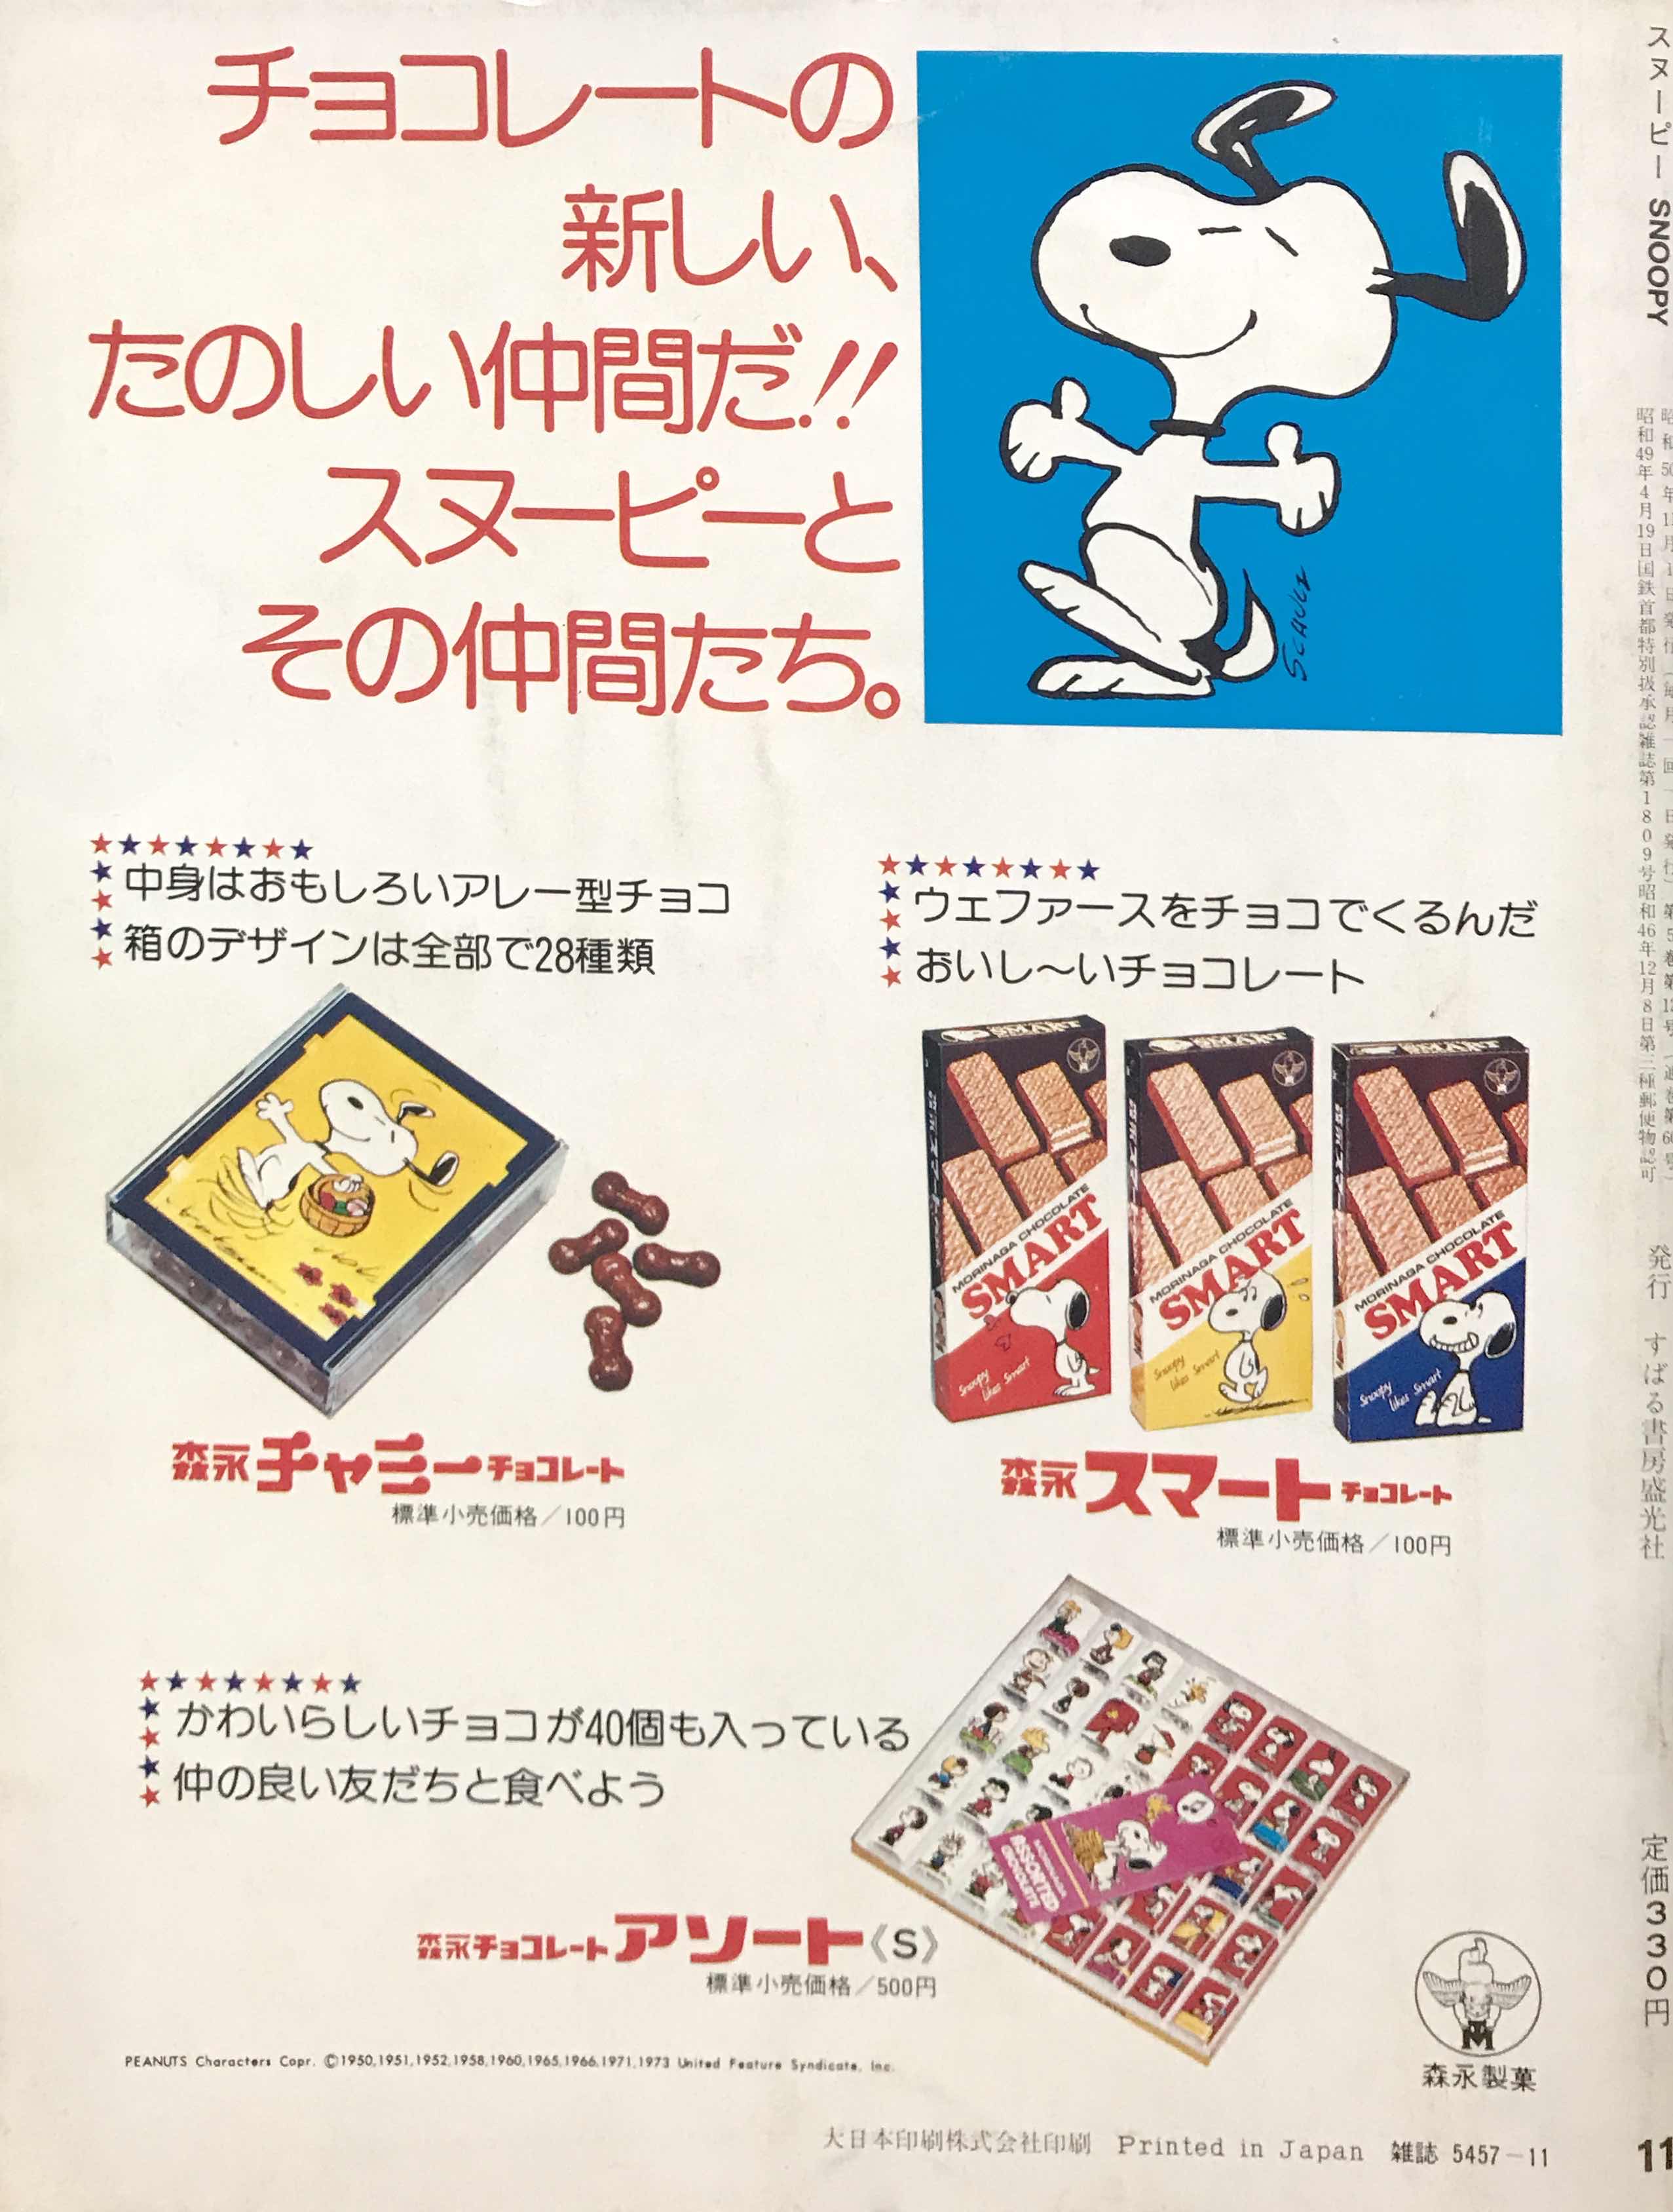 森永製菓スヌーピーシリーズの雑誌広告(1) | １９７６年のスヌーピーと